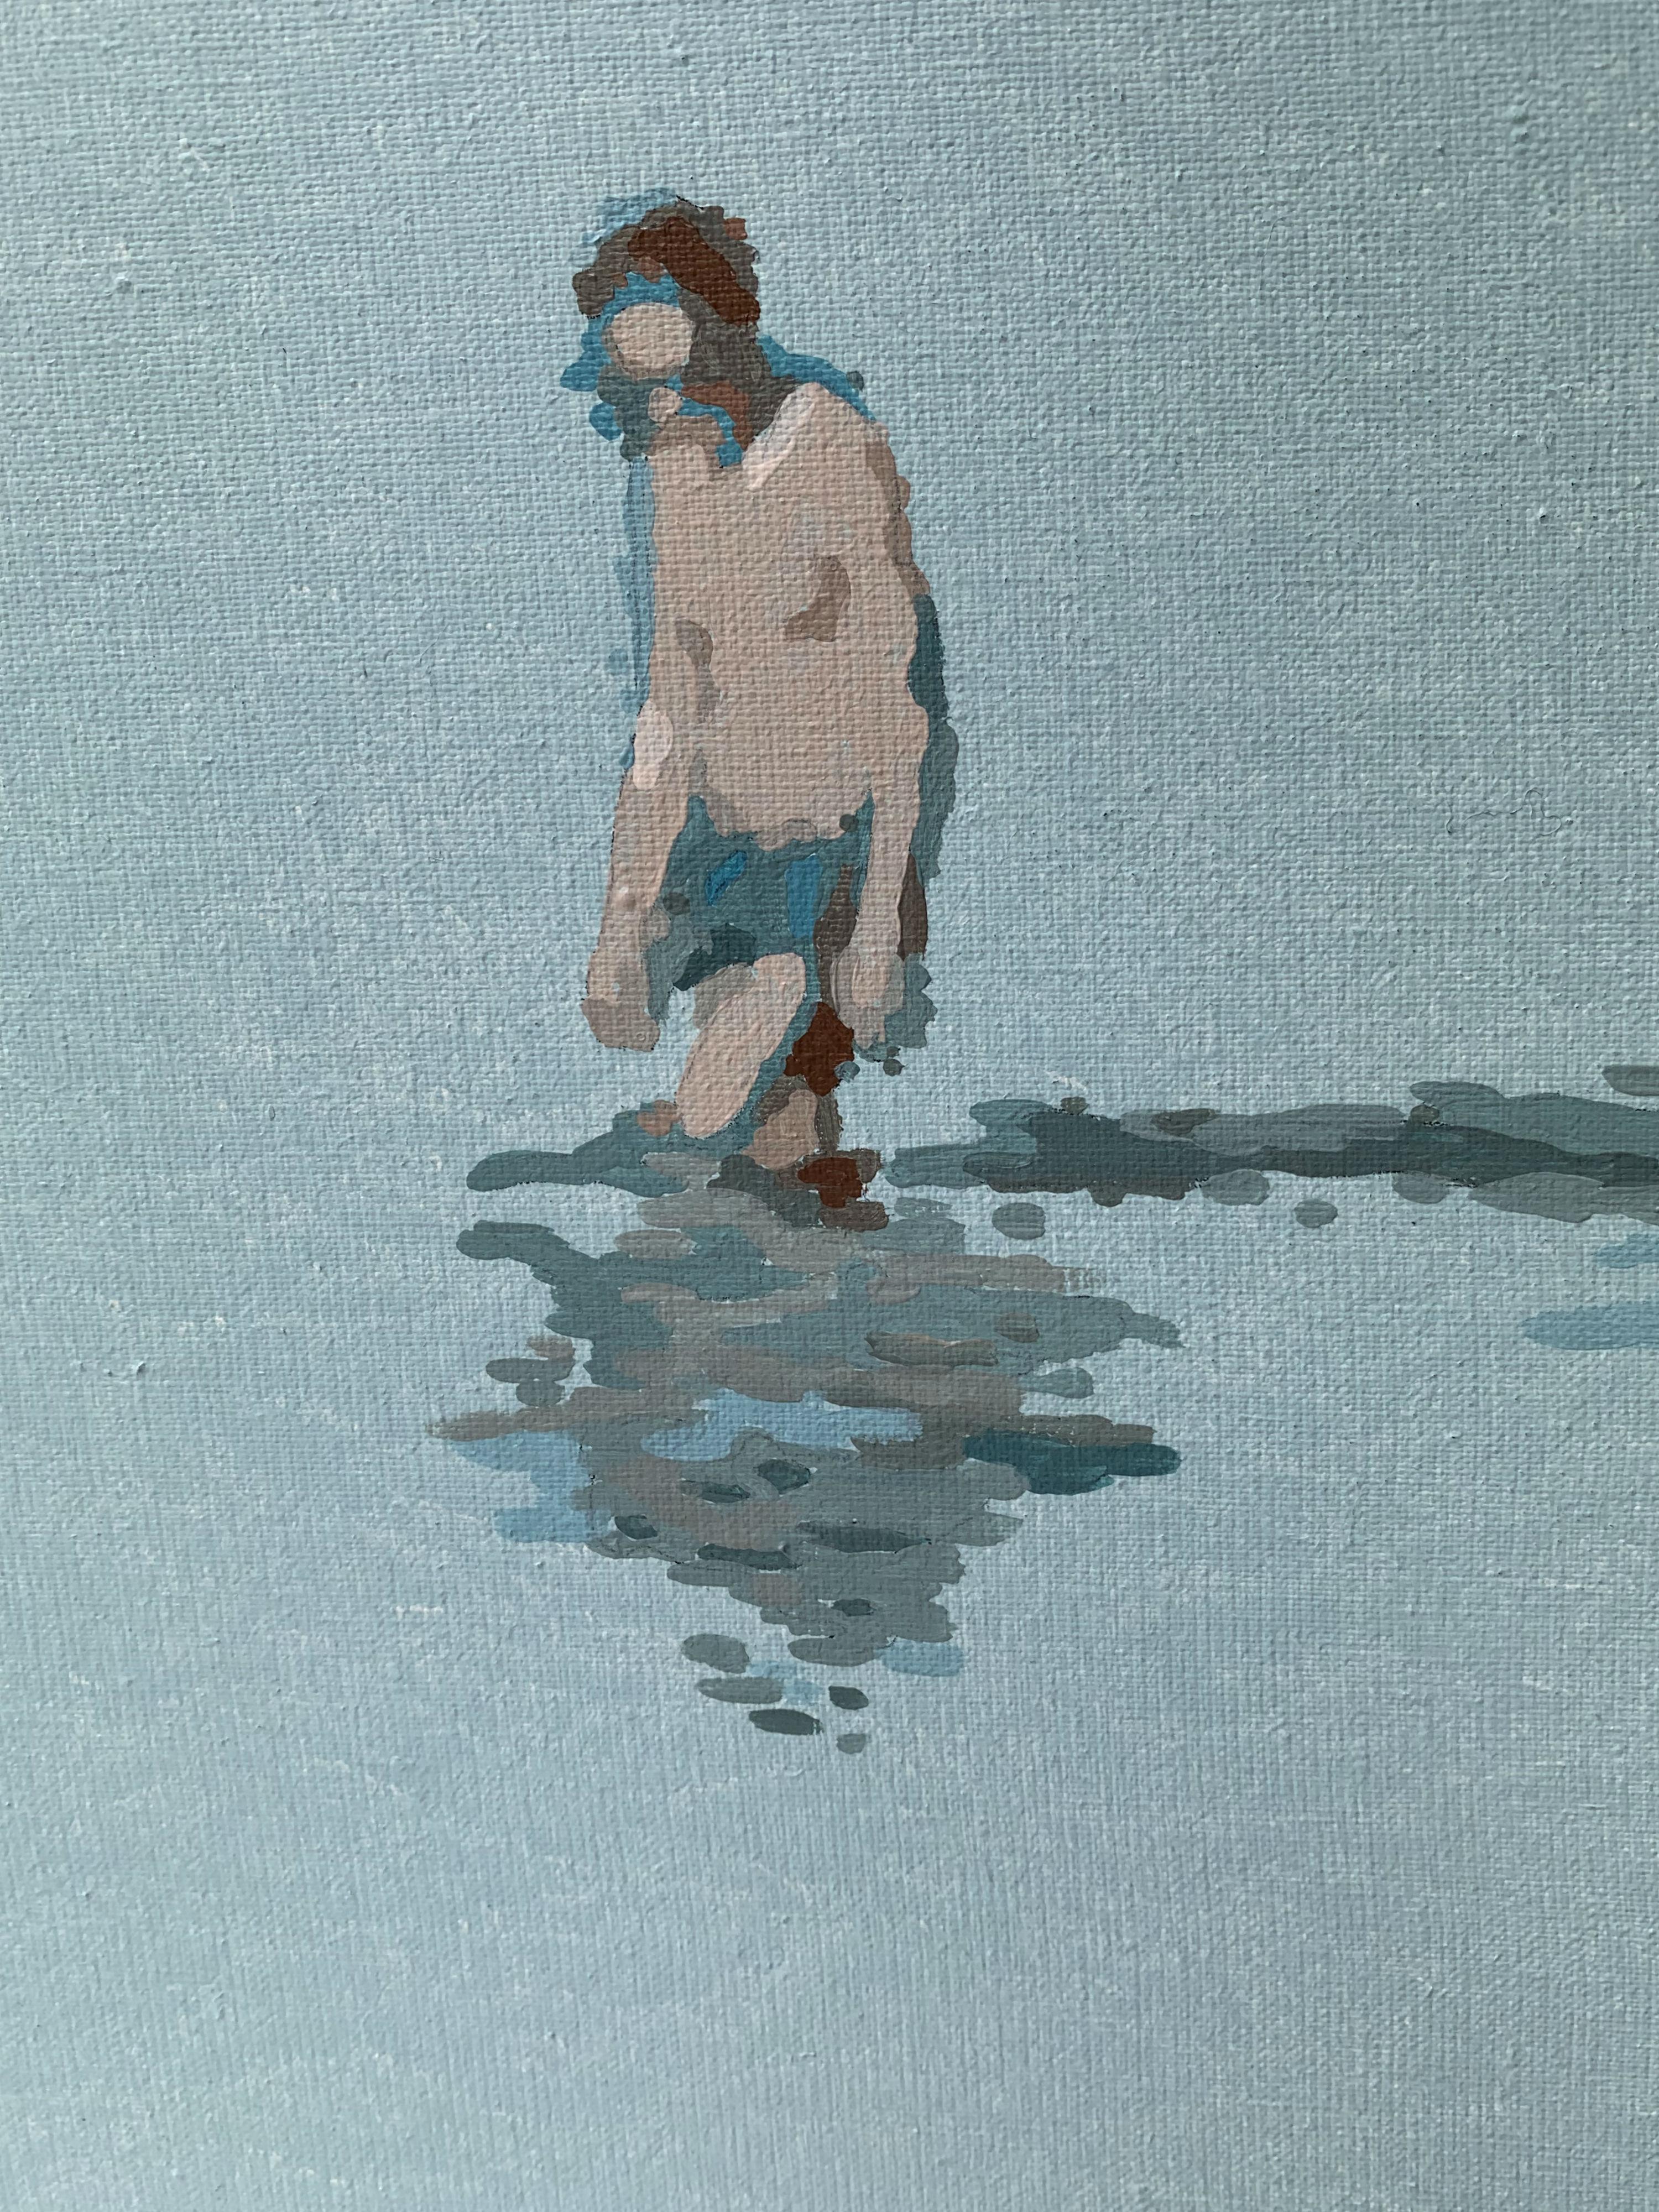 Mann in einem Wasser – Acrylgemälde des XXI. Jahrhunderts, Minimalismus, gedämpfte Farben (Blau), Figurative Painting, von Joanna Woyda